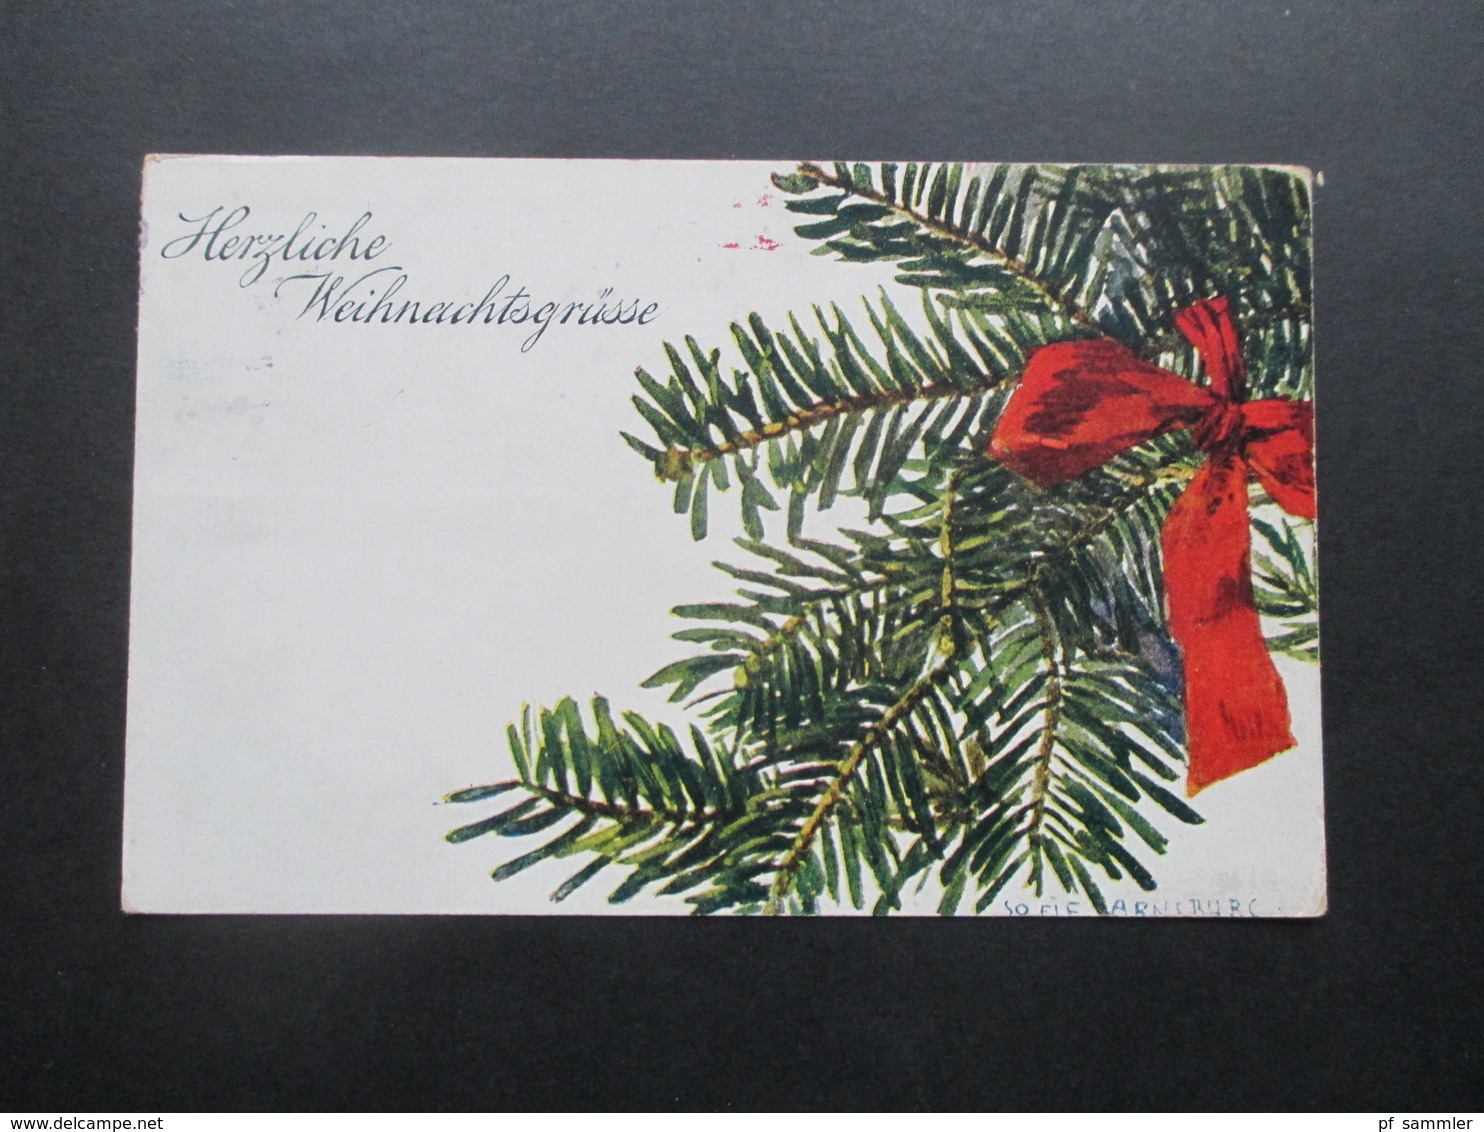 Österreich 1920 Künstlerkarte Weihnachtskarte Von Sofie Arnsburg Tannenzweig Mit Schleife / Herzliche Weihnachtsgrüsse - Covers & Documents